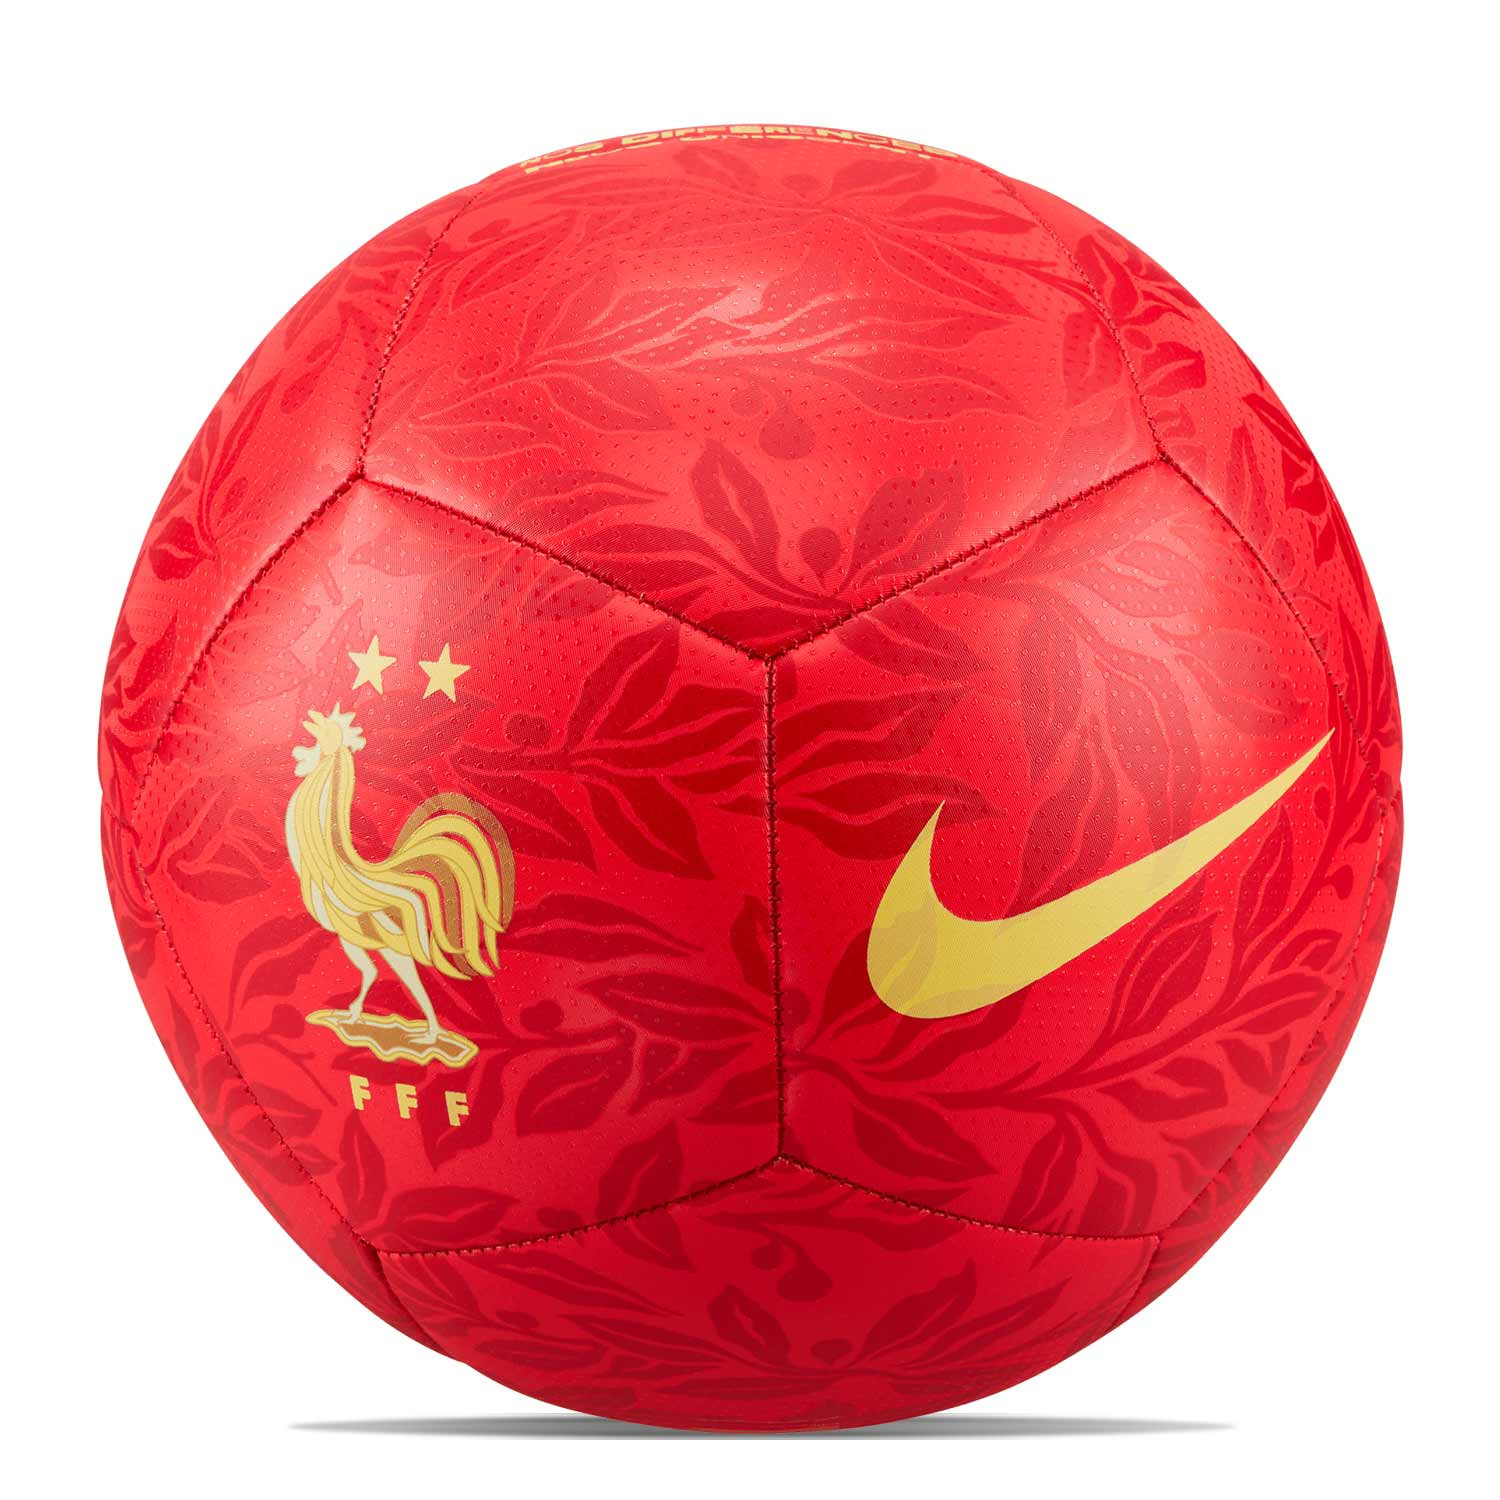 Síguenos interferencia Susurro Balón Nike Francia Pitch talla 5 rojo | futbolmania